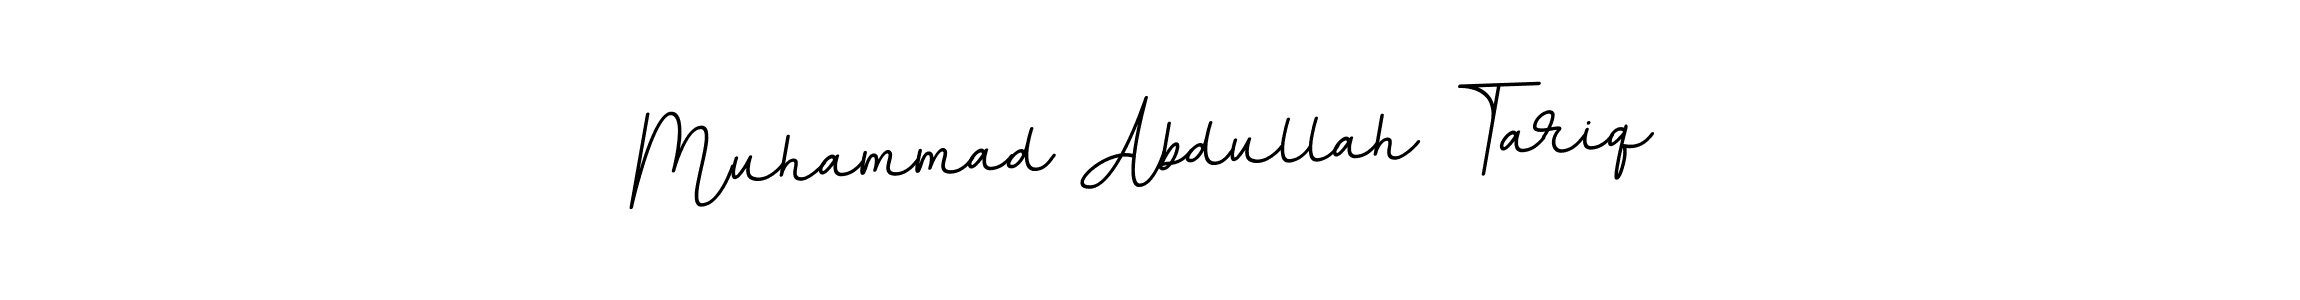 Muhammad Abdullah Tariq stylish signature style. Best Handwritten Sign (BallpointsItalic-DORy9) for my name. Handwritten Signature Collection Ideas for my name Muhammad Abdullah Tariq. Muhammad Abdullah Tariq signature style 11 images and pictures png